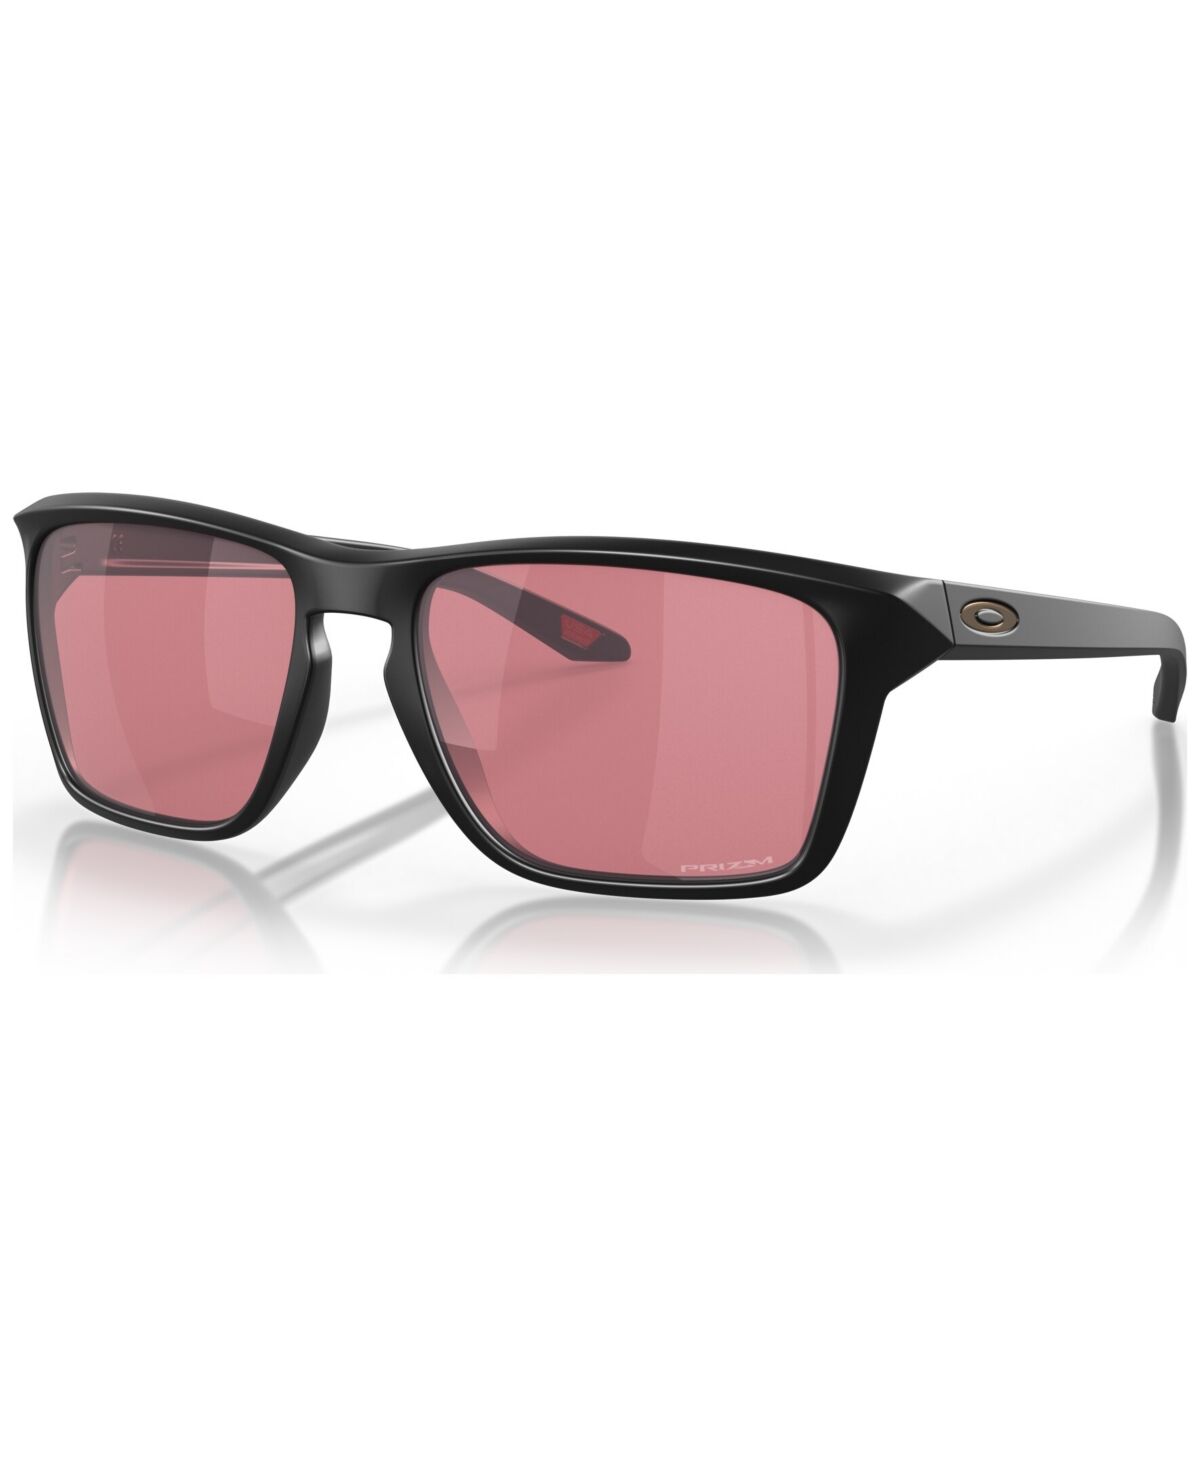 Oakley Men's Sunglasses, OO9448-3360 - Matte Black